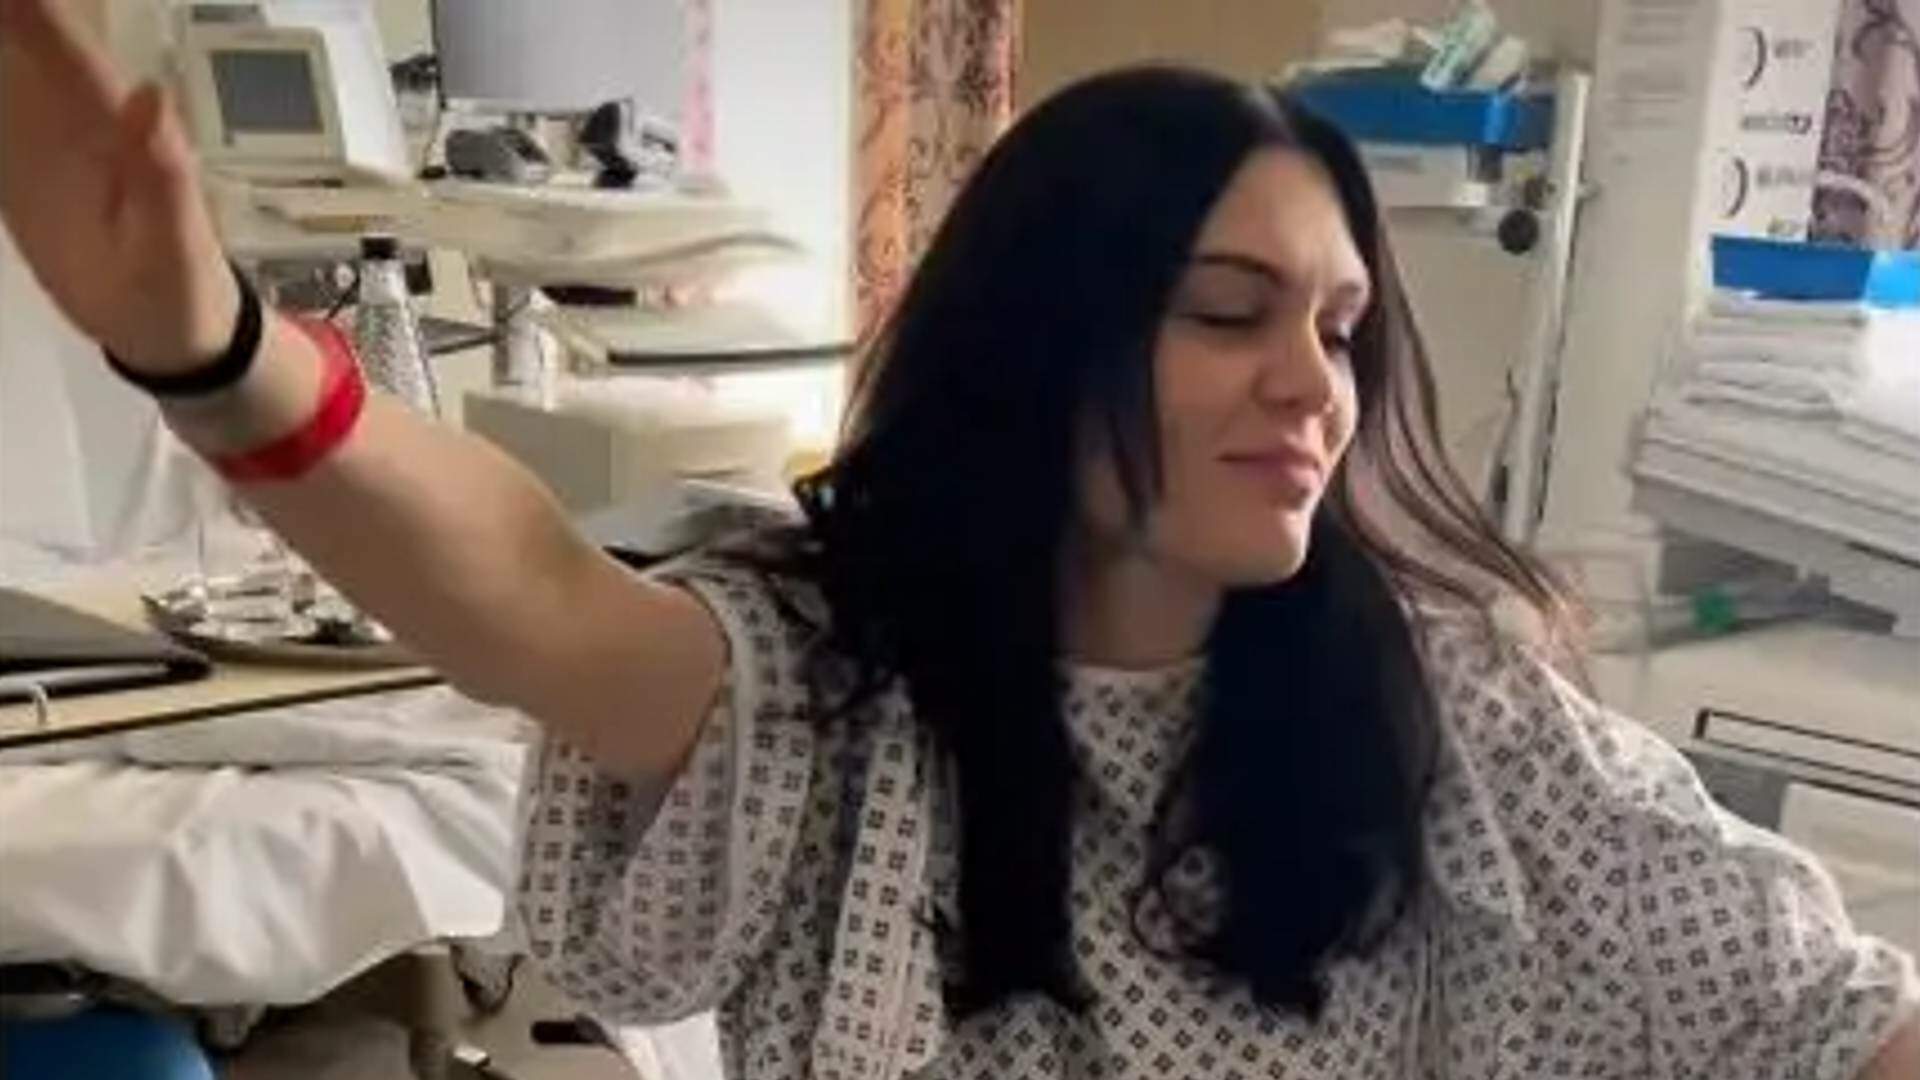 Jessie J publica vídeo descontraído em que aparece dançando até o chão antes do parto - Metropolitana FM